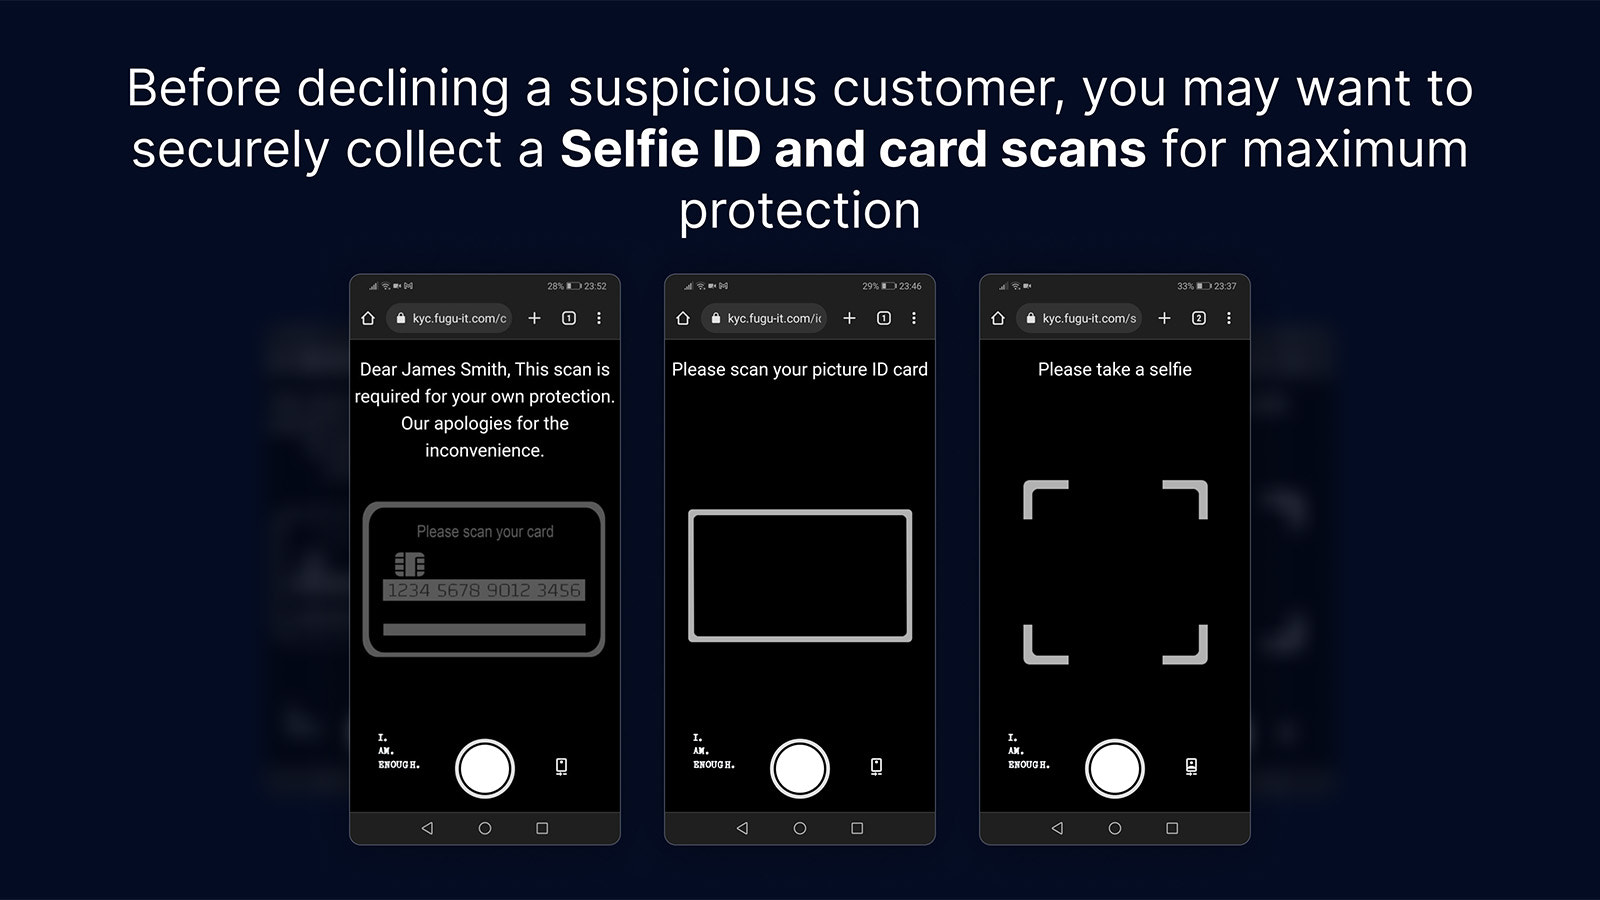 Bei Bedarf sicher Selfie-ID's und Kartenscans sammeln